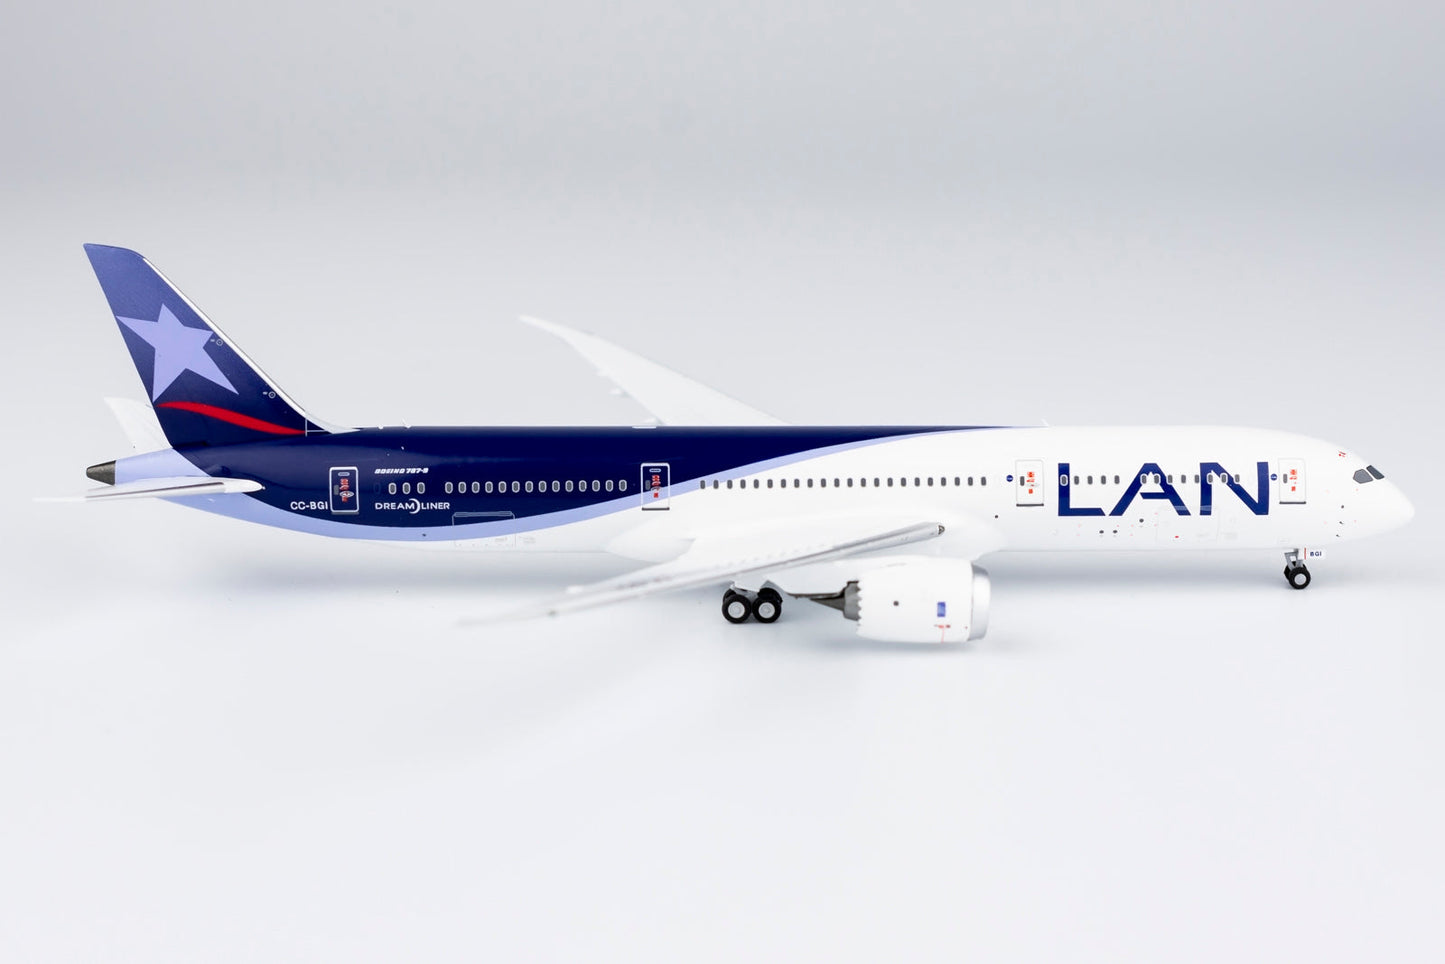 * 1/400 LAN Airlines B 787-9 NG Models 55091